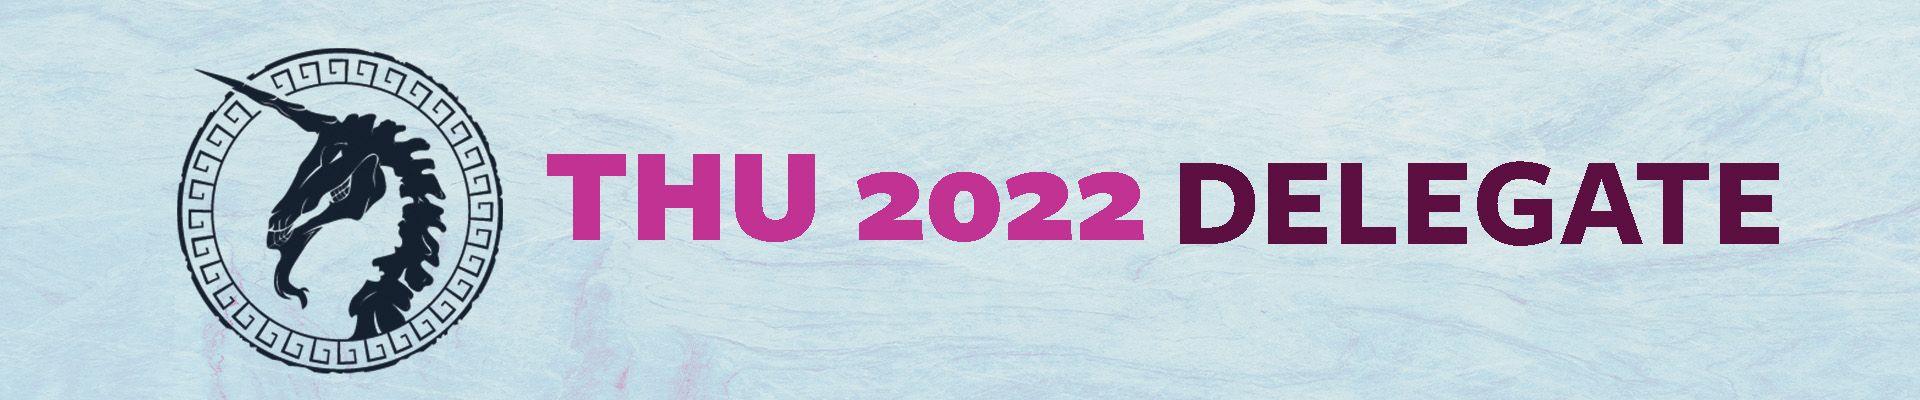 CGAfrica joined THU 2022 | CGAfrica